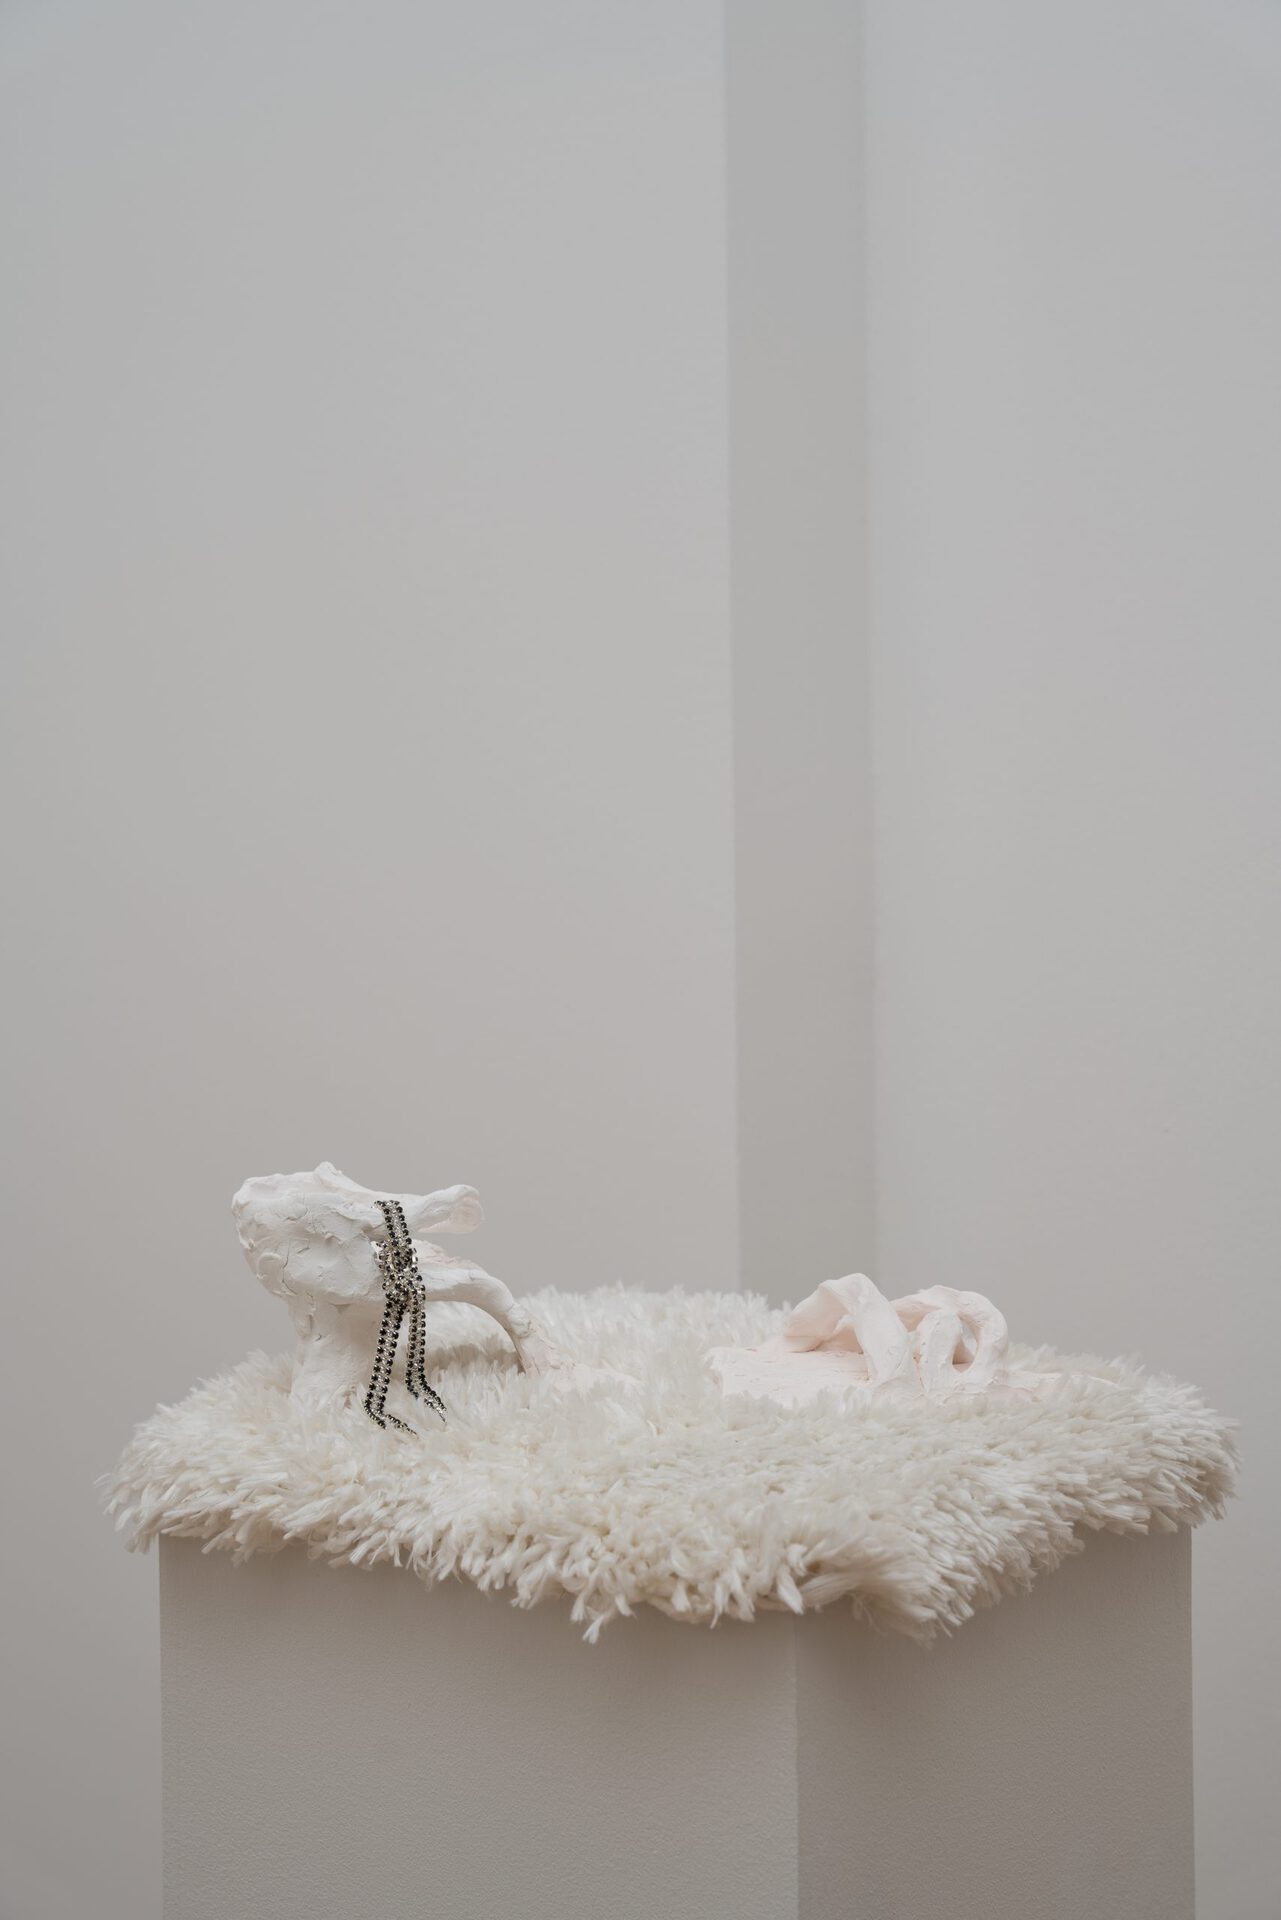 Carla Milentis, Untitled, 2021, Porcelain, diamante ribbon, tile glue, 35 x 11 x 10cm